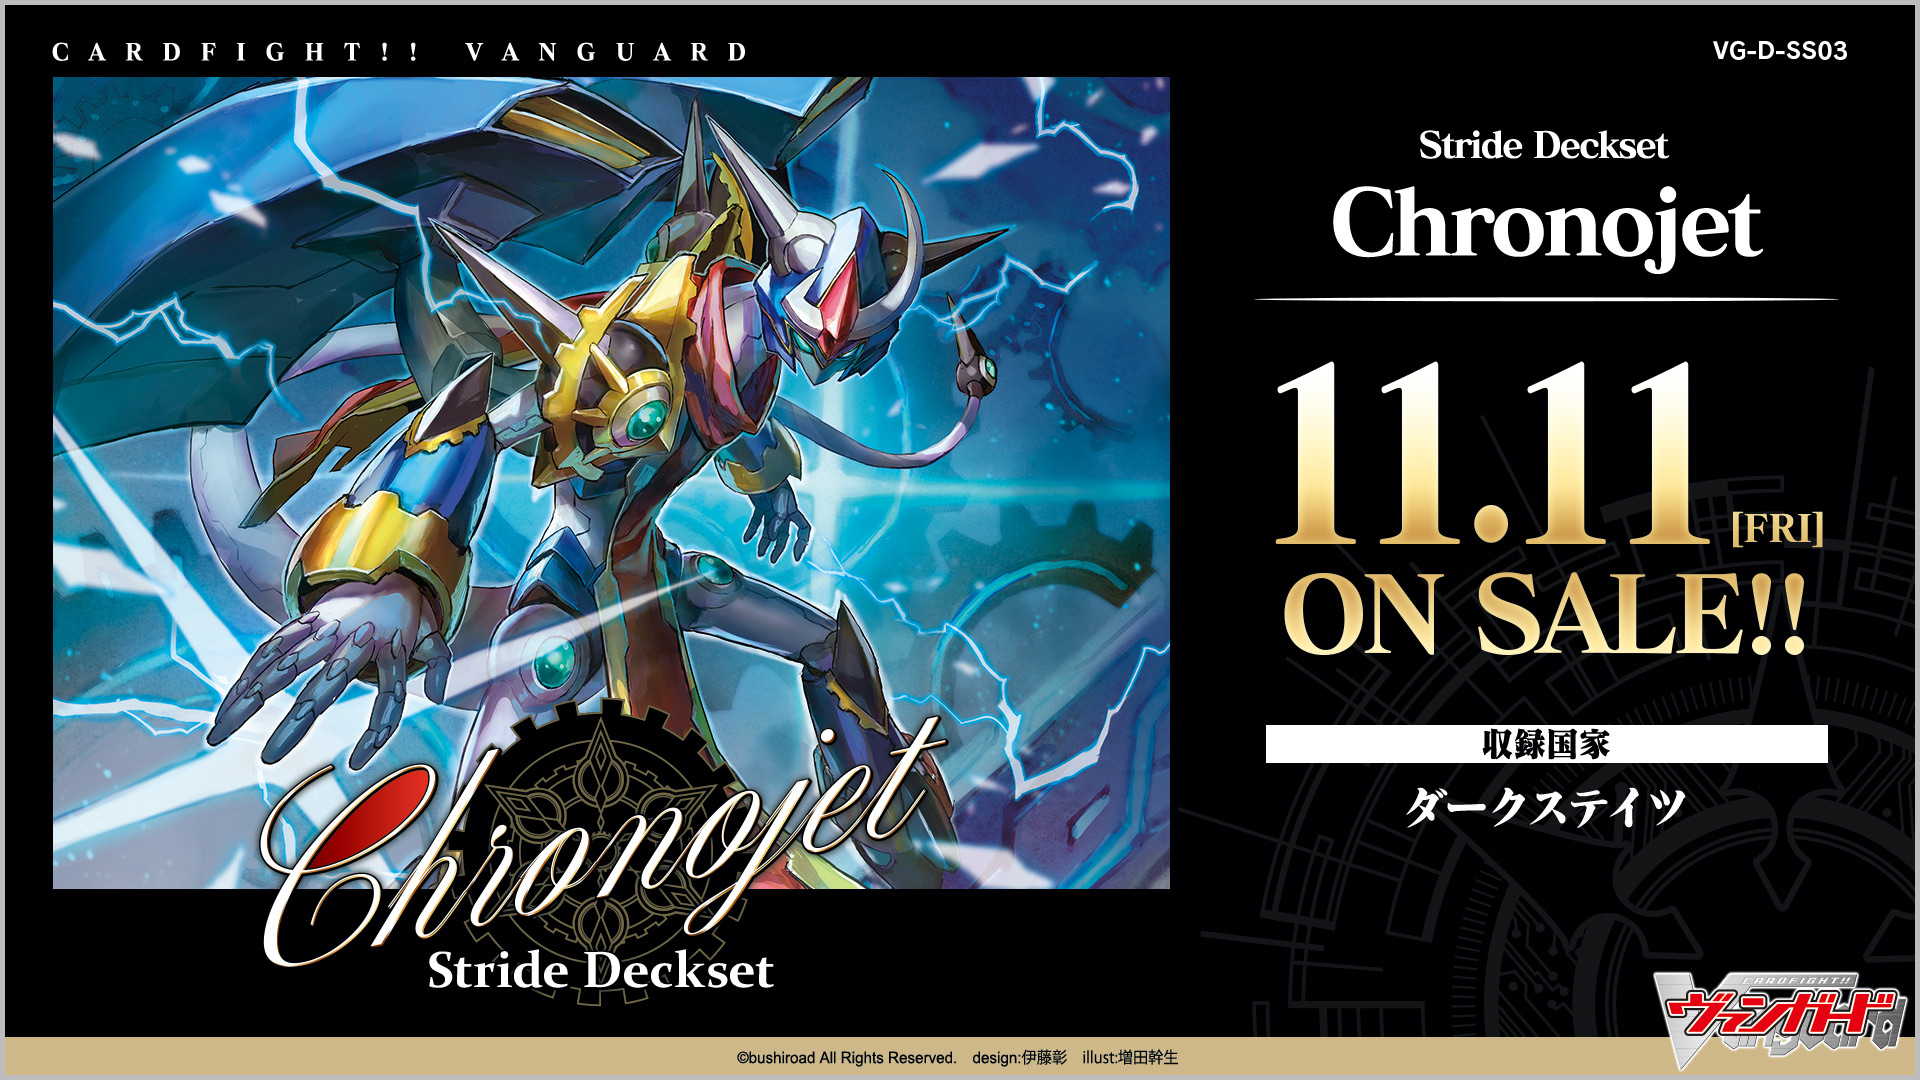 カードファイト!! ヴァンガードよりスペシャルシリーズ第3弾「Stride Deckset  Chronojet」が11月11日(金)に発売！｜株式会社ブシロードのプレスリリース